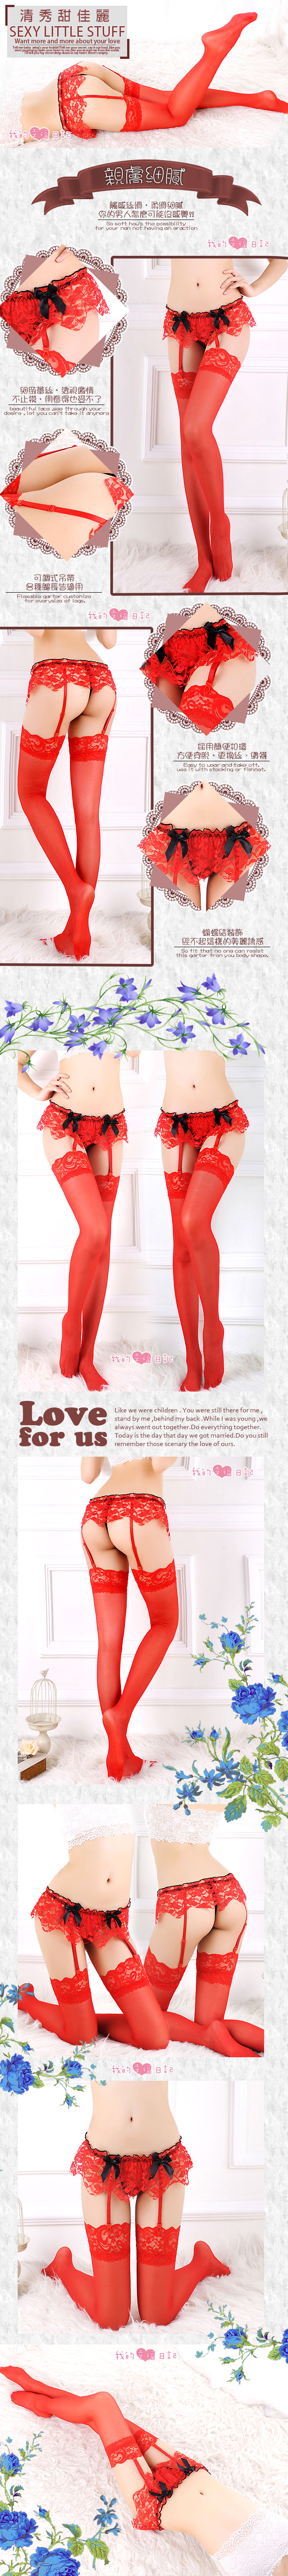 雅緻美人‧絲滑蕾絲吊襪帶+大腿蕾絲絲襪(紅)